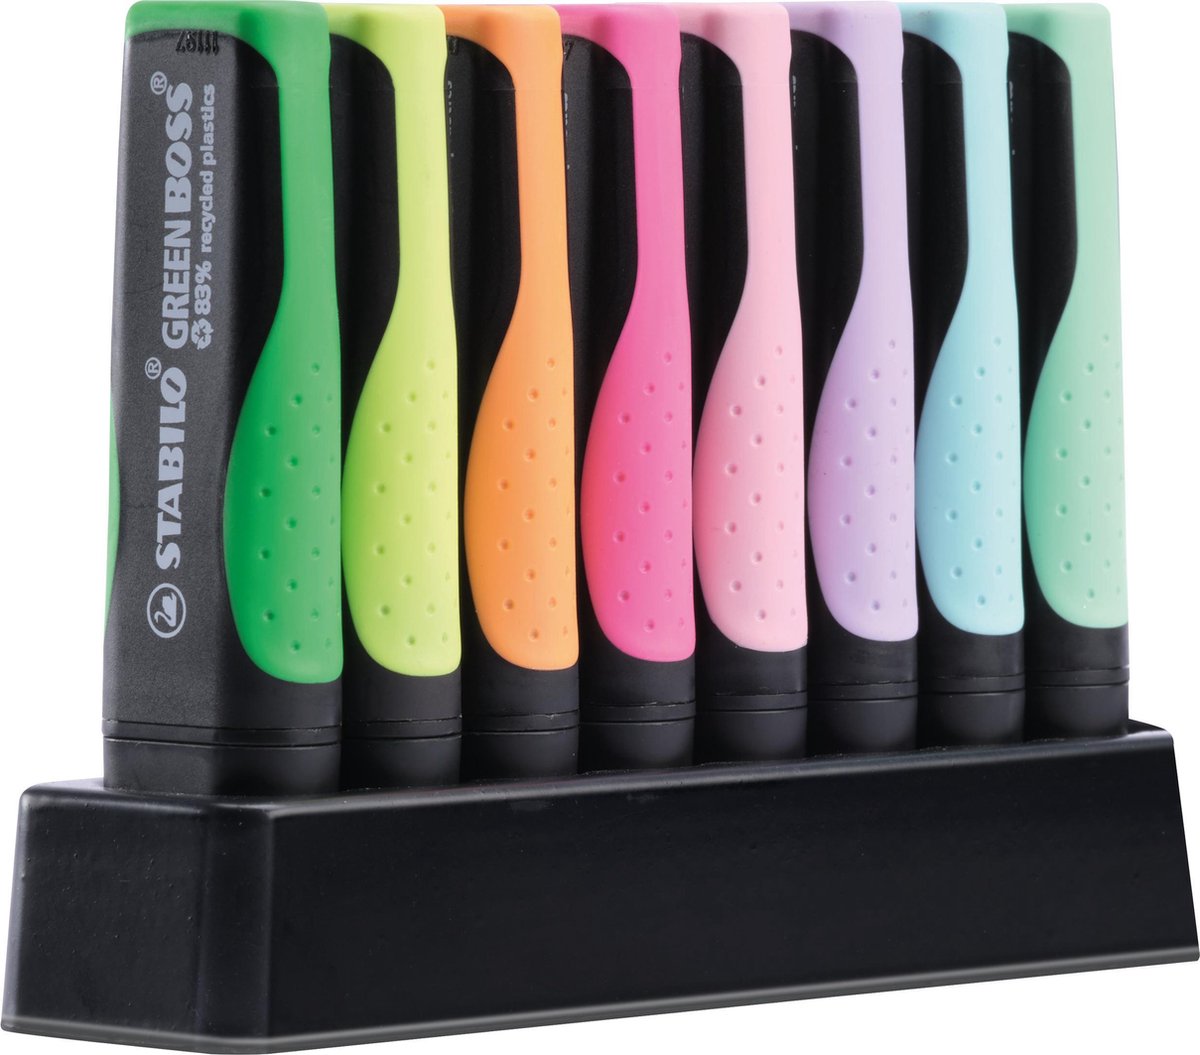 STABILO GREEN BOSS Pastel - Markeerstift - Gemaakt van 83% Gerecycled Plastic - 8 Stuks Deskset - 4 Standaard + 4 Pastel Kleuren